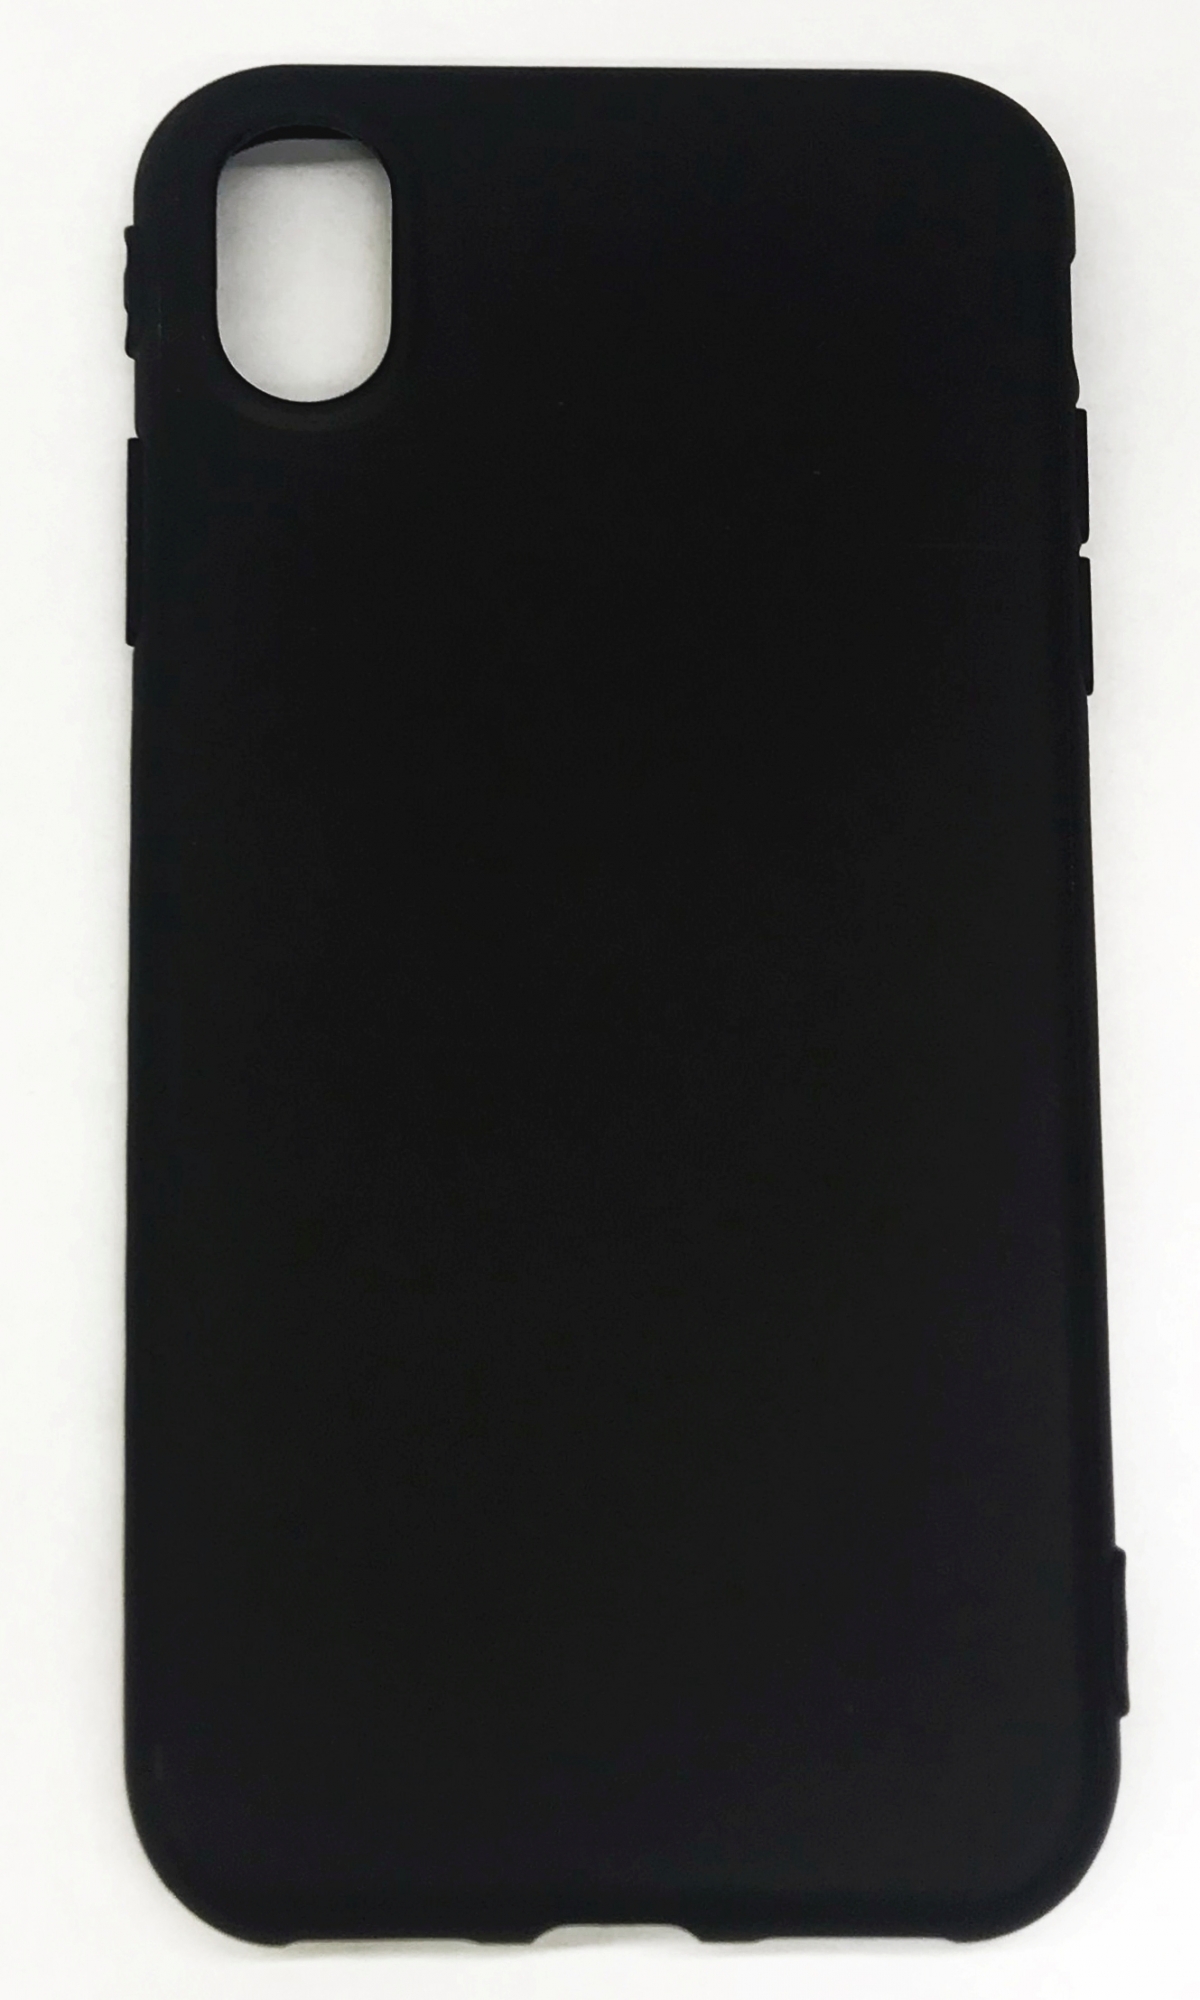 Чехол клип-кейс силиконовый матовый для Apple iPhone X (черный)